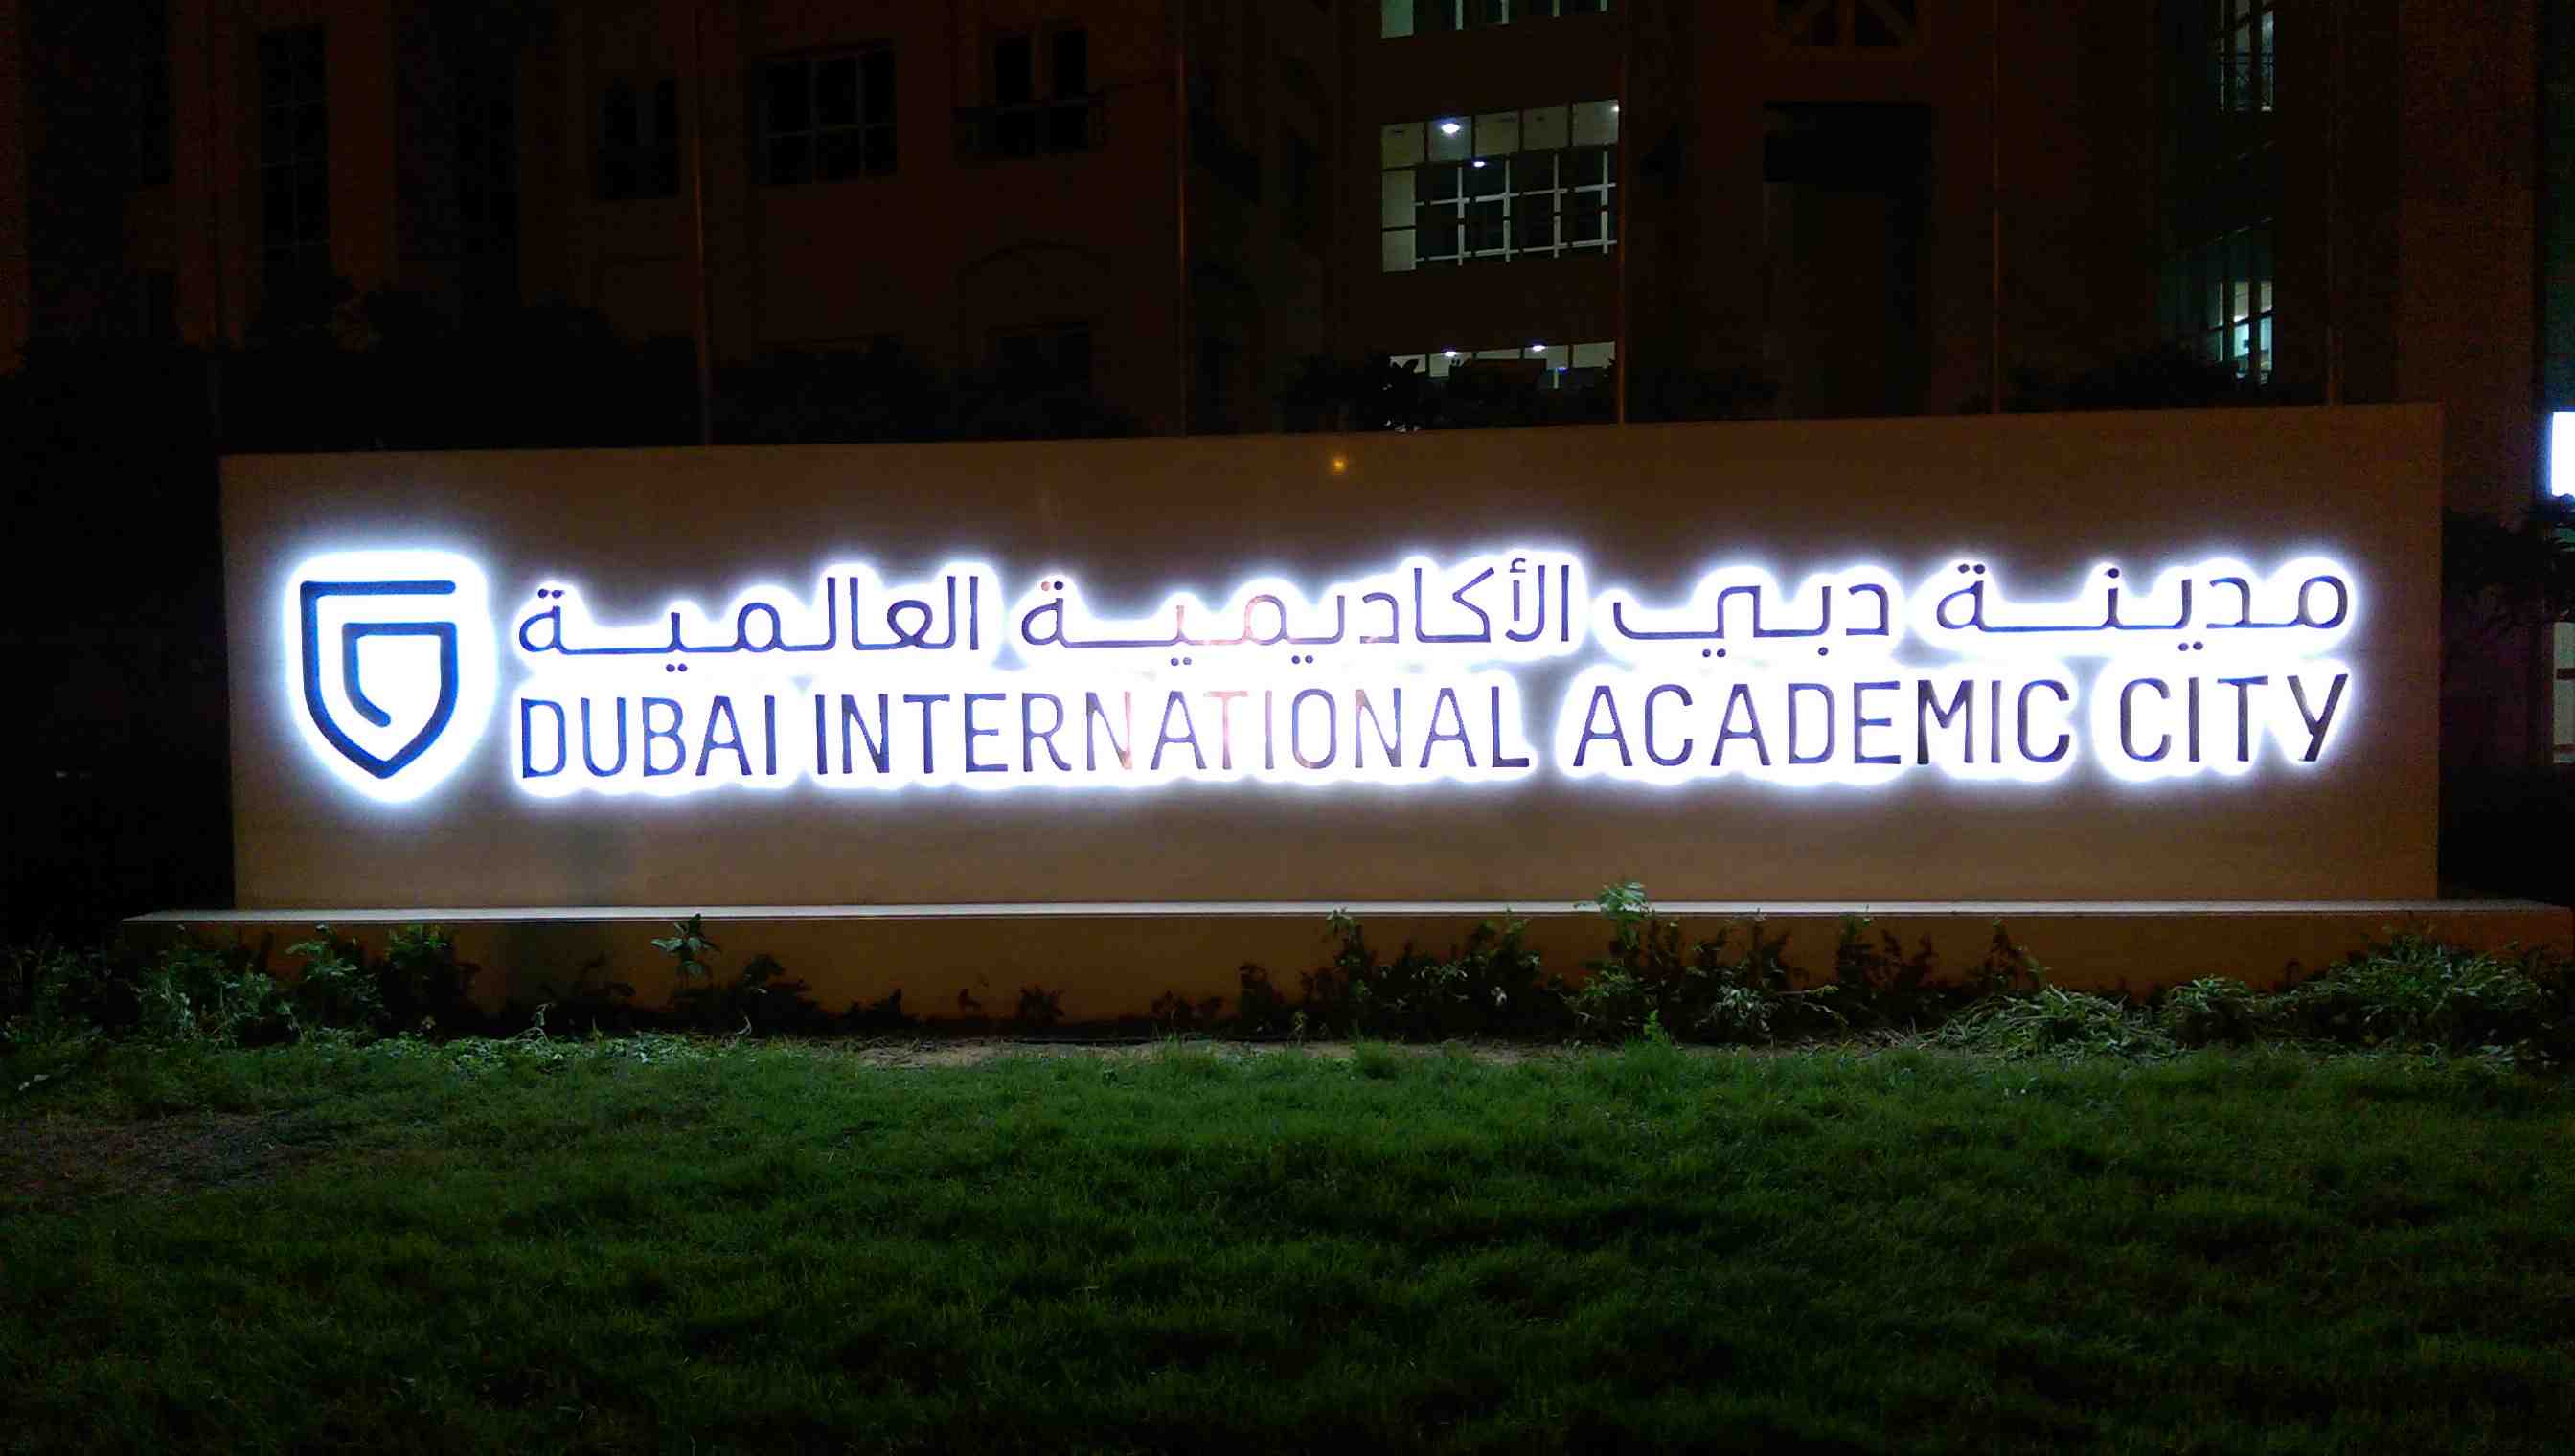 Signage - DUBAI INTERNATIONAL ACADEMIC 